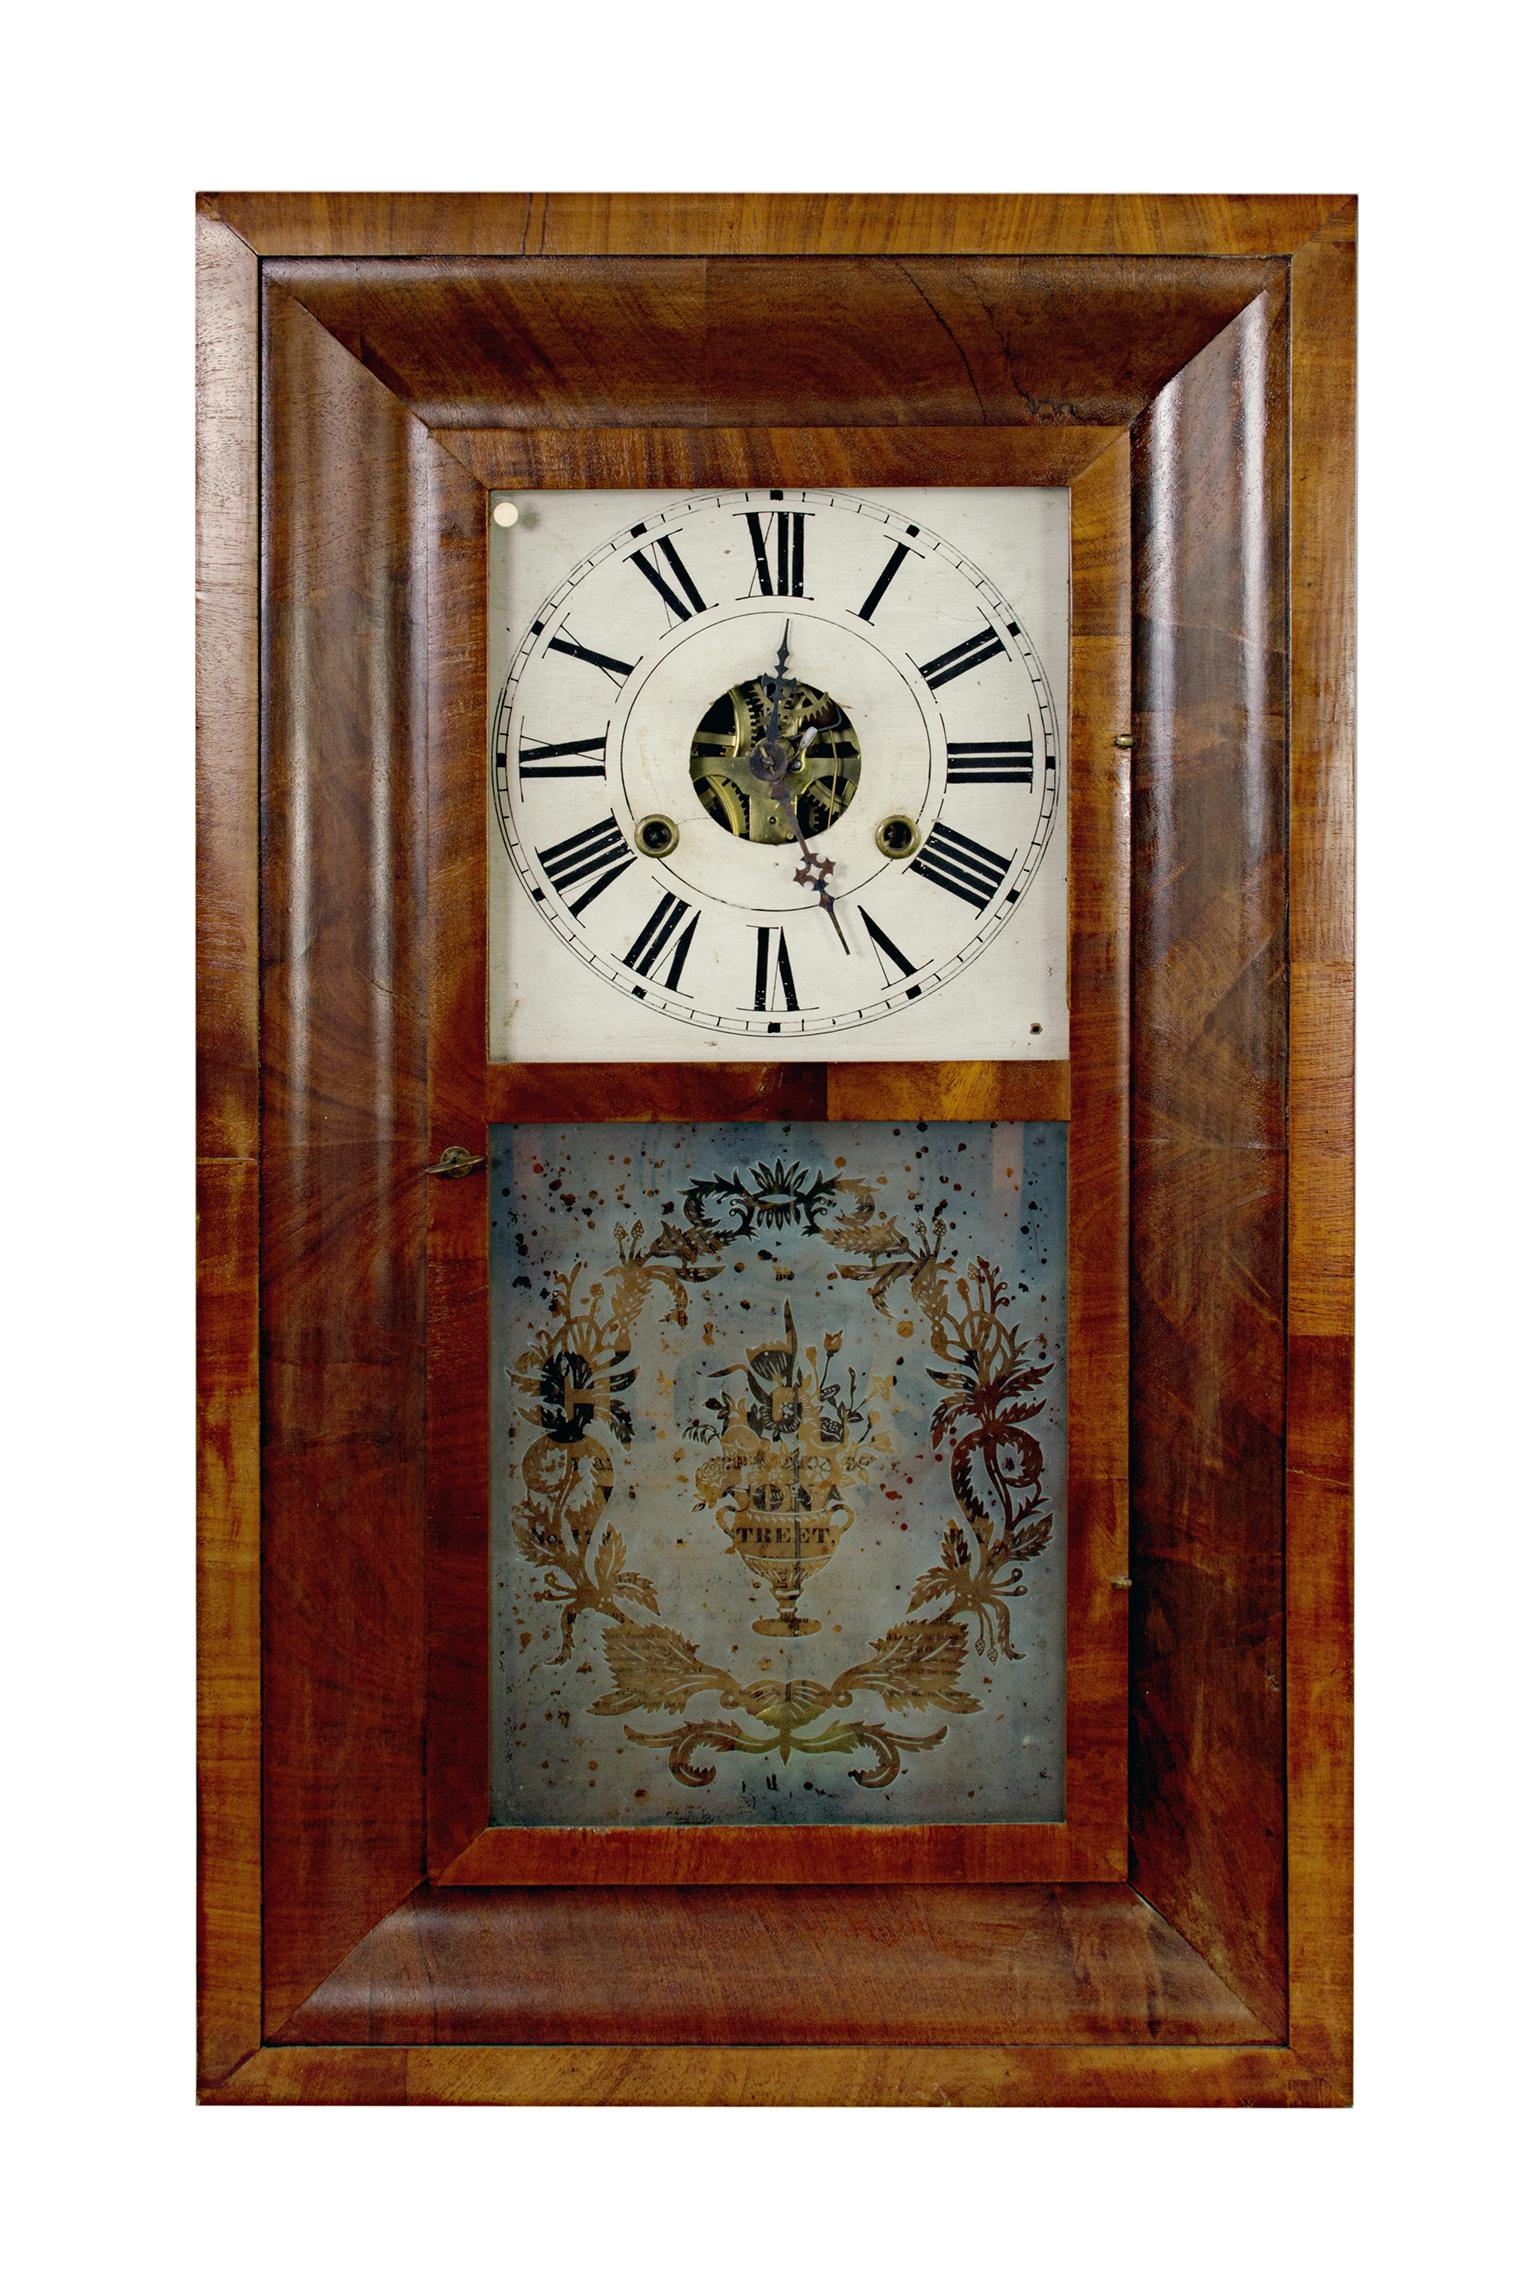 Cette horloge de 30 heures a été conçue par un designer américain nommé W.S. Conan. Il présente un magnifique bois foncé et un verre gravé avec un motif floral. 

26" x 15 1/4" x 4 1/4" 
